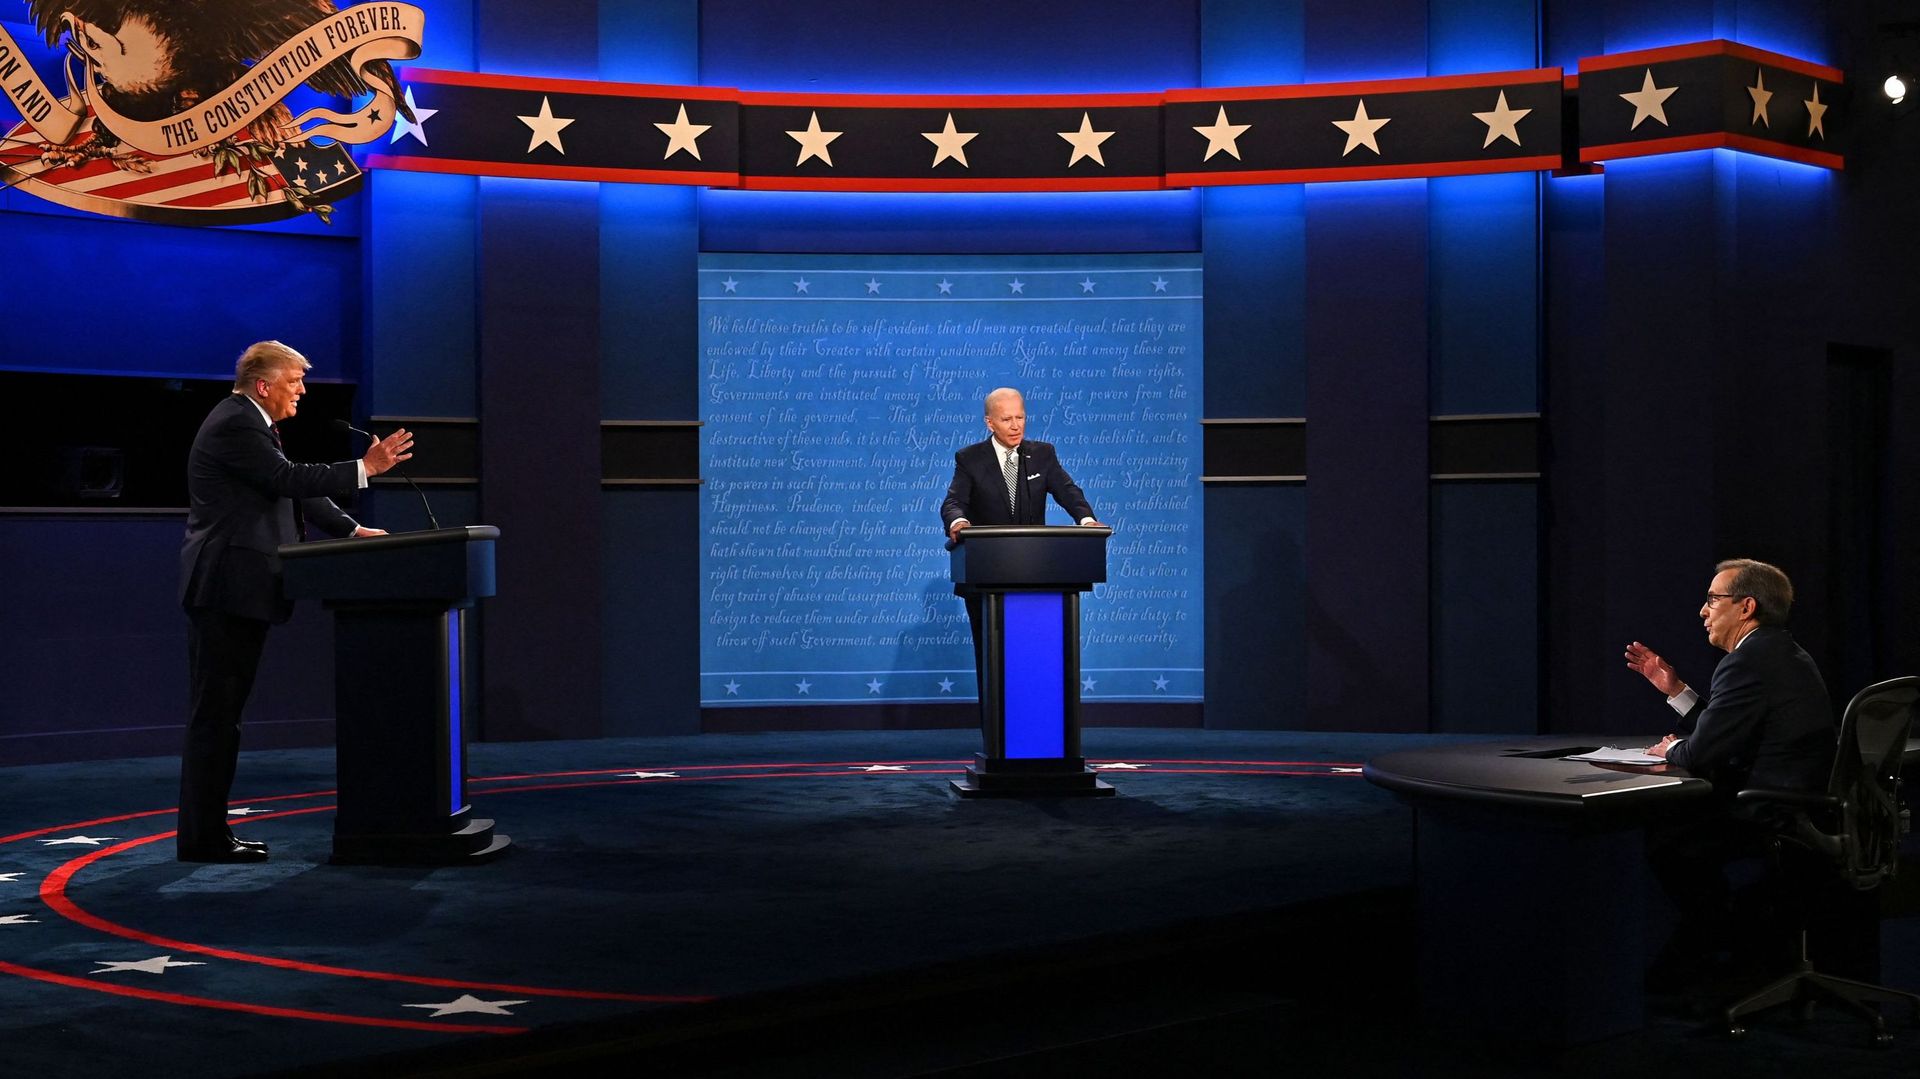 Le débat du 29 septembre 2020 entre Donald Trump et Joe Biden, lors de la campagne pour l’élection présidentielle américaine